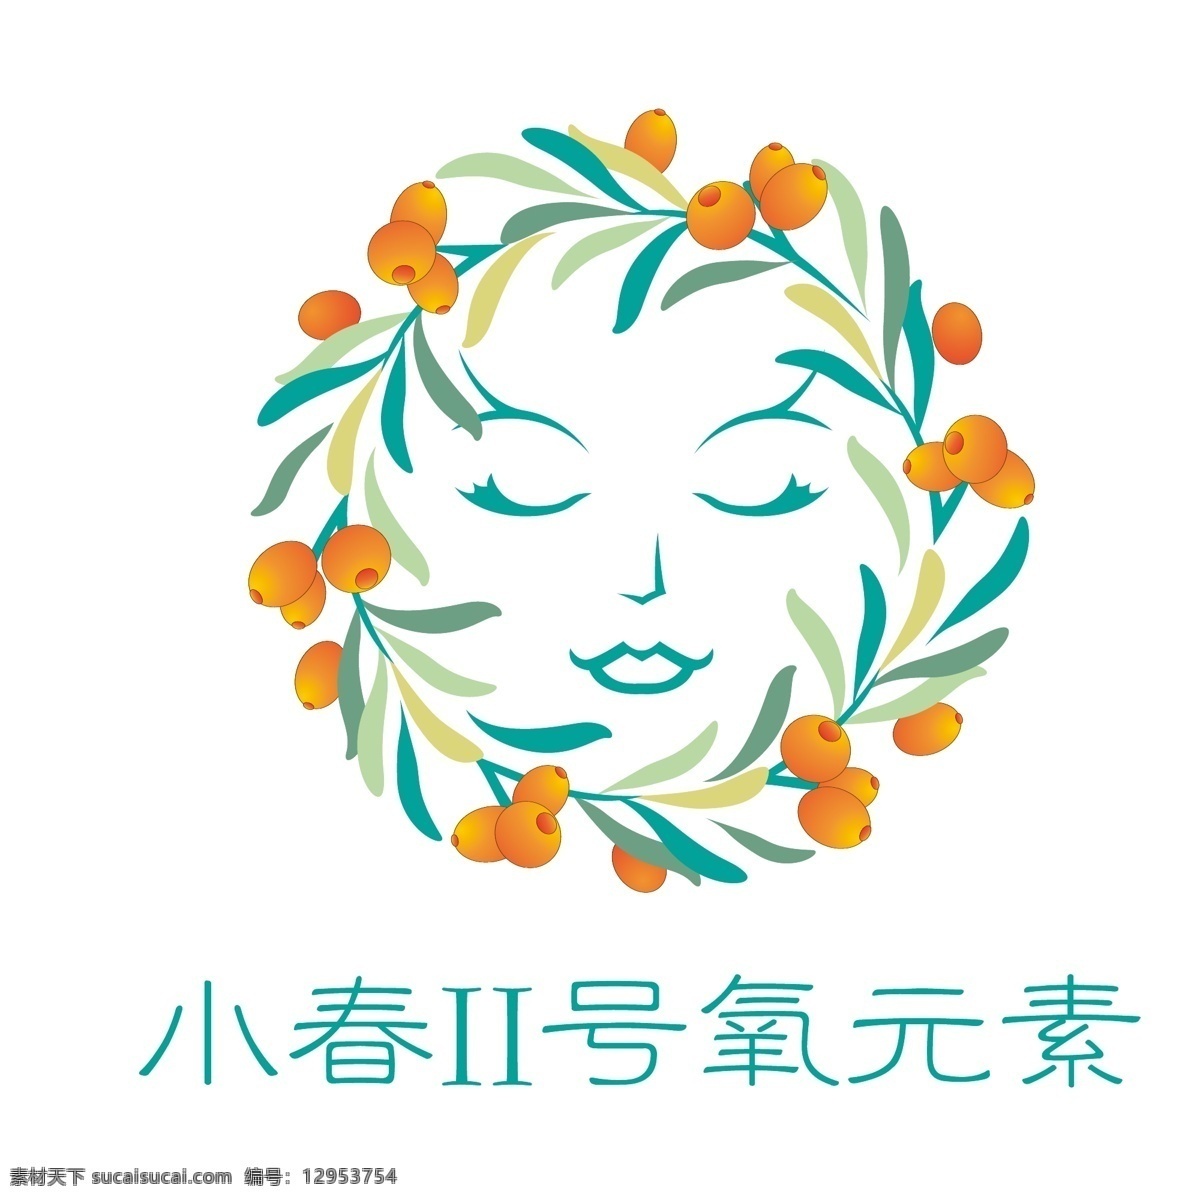 小春二号 小春logo logo 沙棘 人物logo 圆形logo logo设计